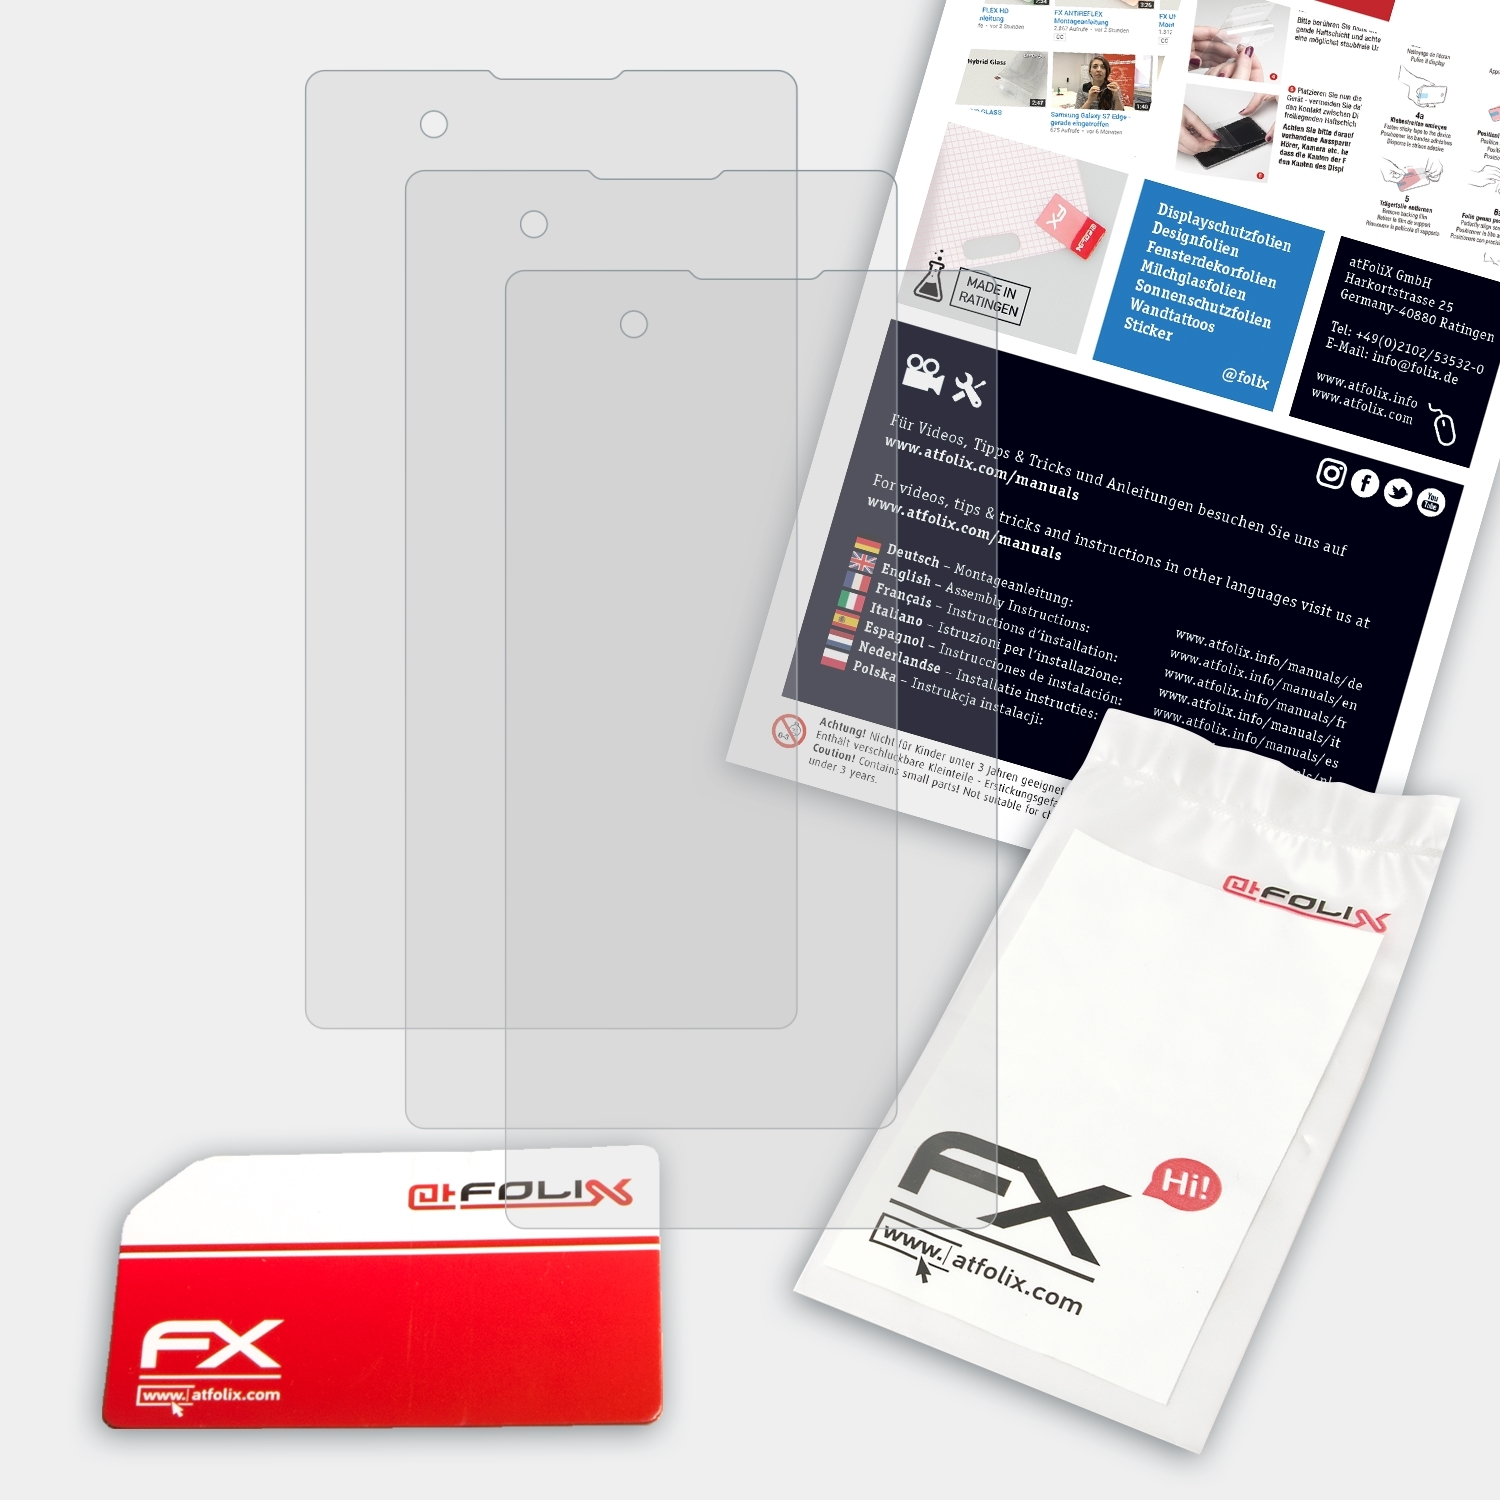 FX-Antireflex (P940)) Displayschutz(für 3.0 3x LG ATFOLIX Prada Phone